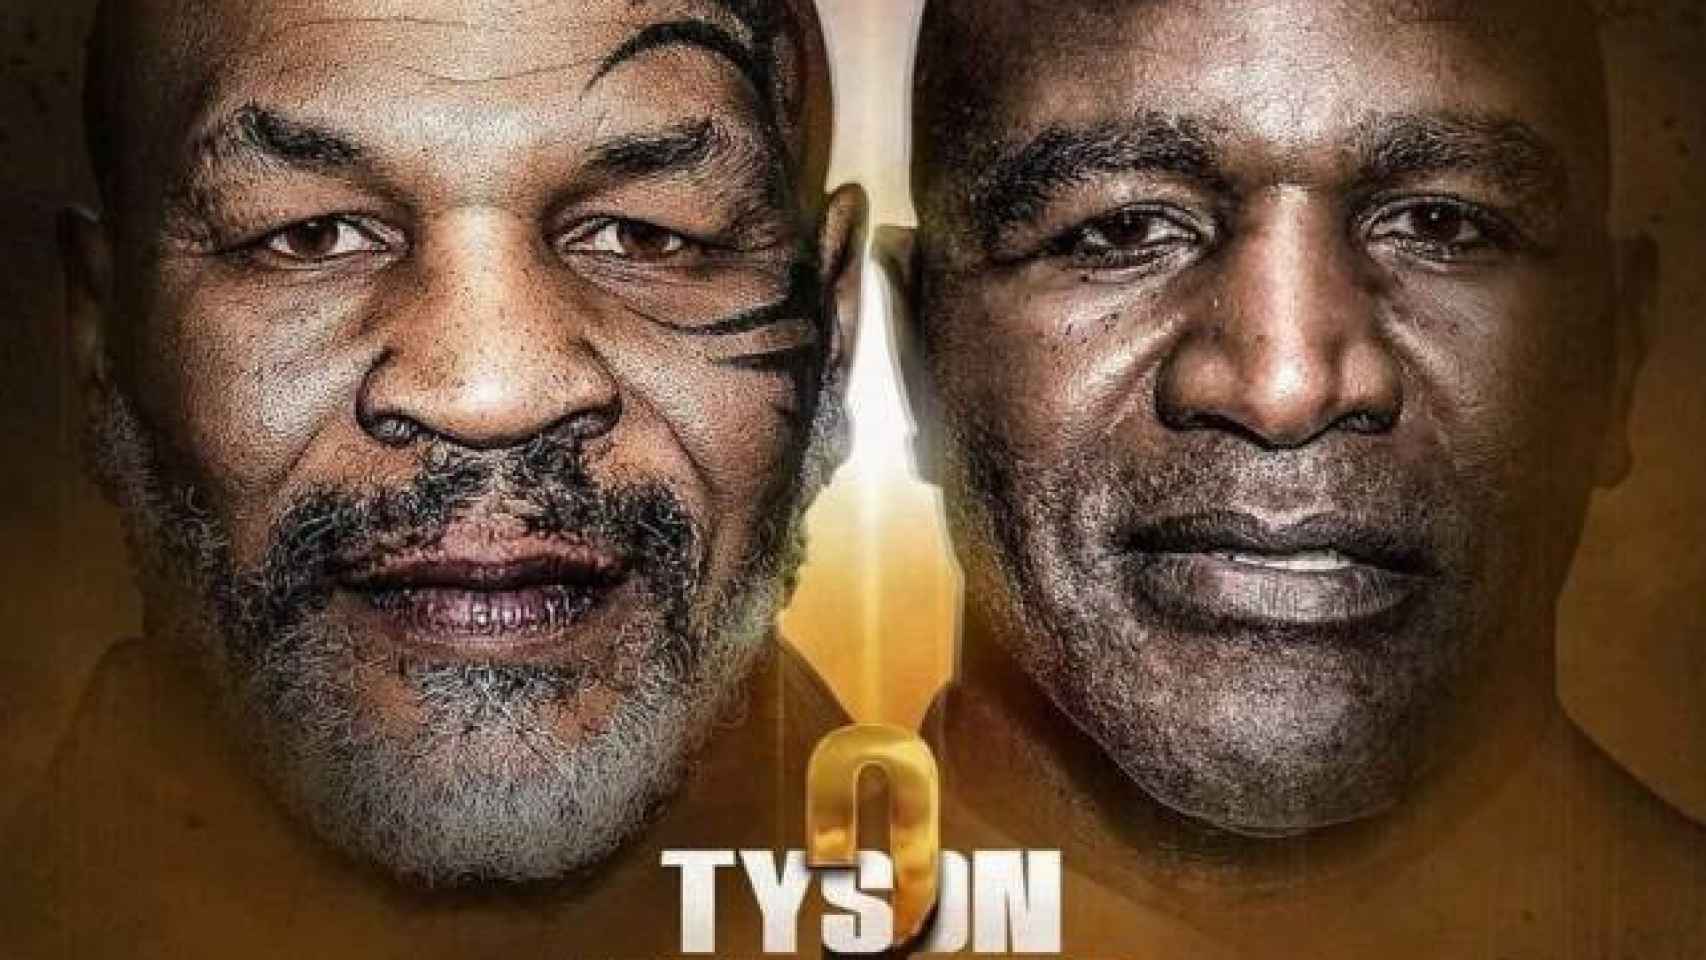 Cartel de la pelea entre Tyson y Holyfield